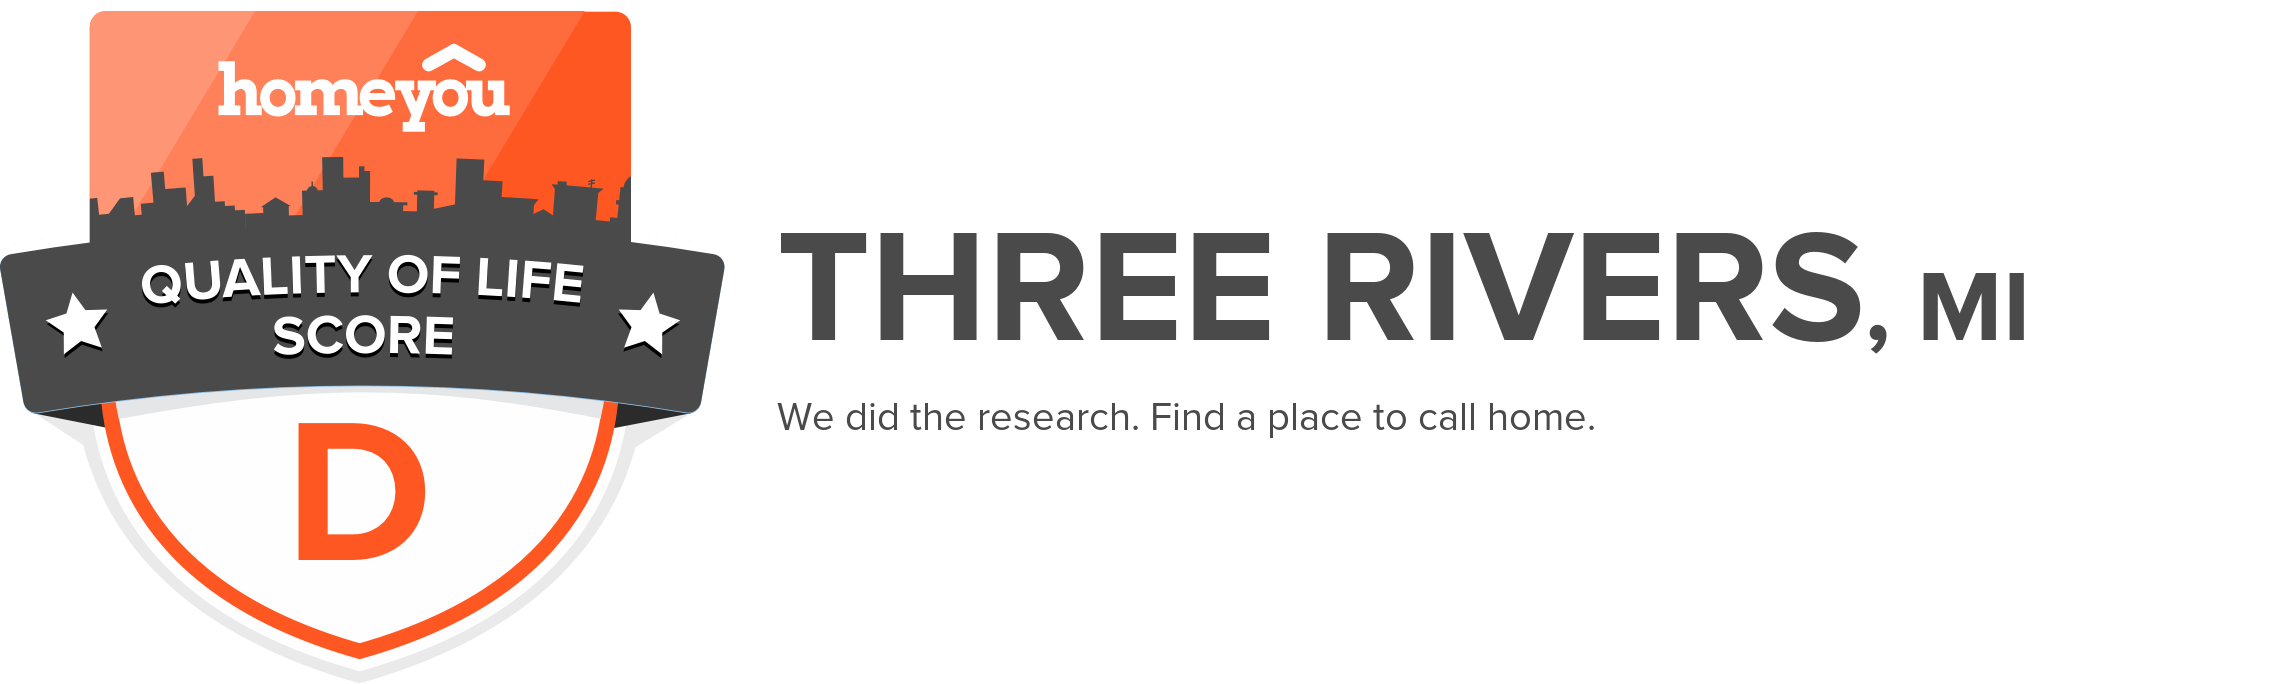 Three Rivers, MI